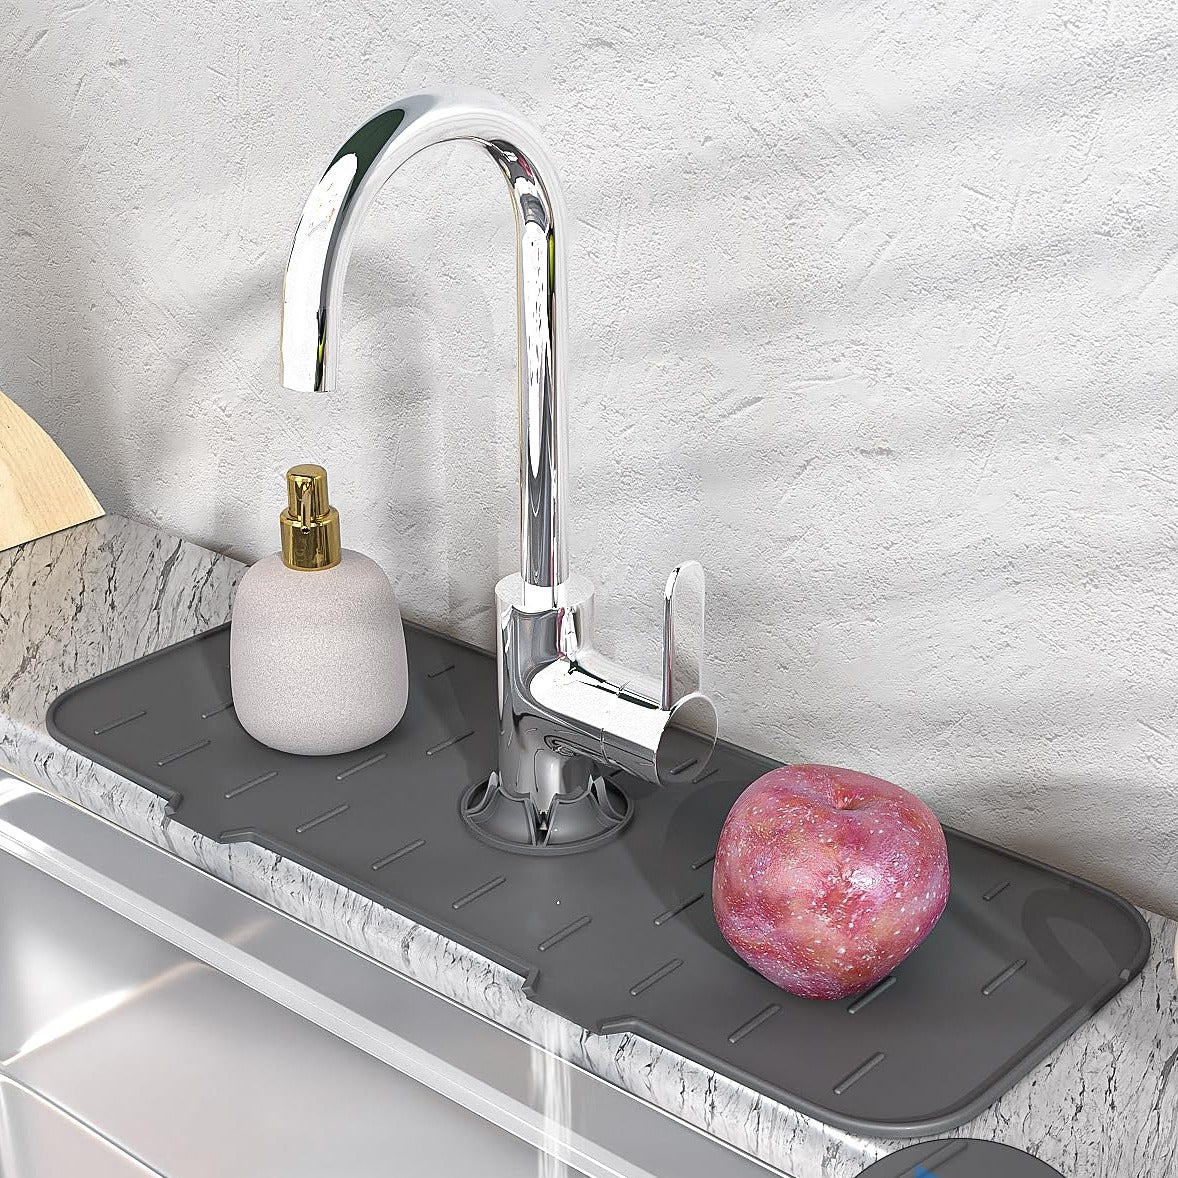 Silicone Sink Saver Mat – gotobucket